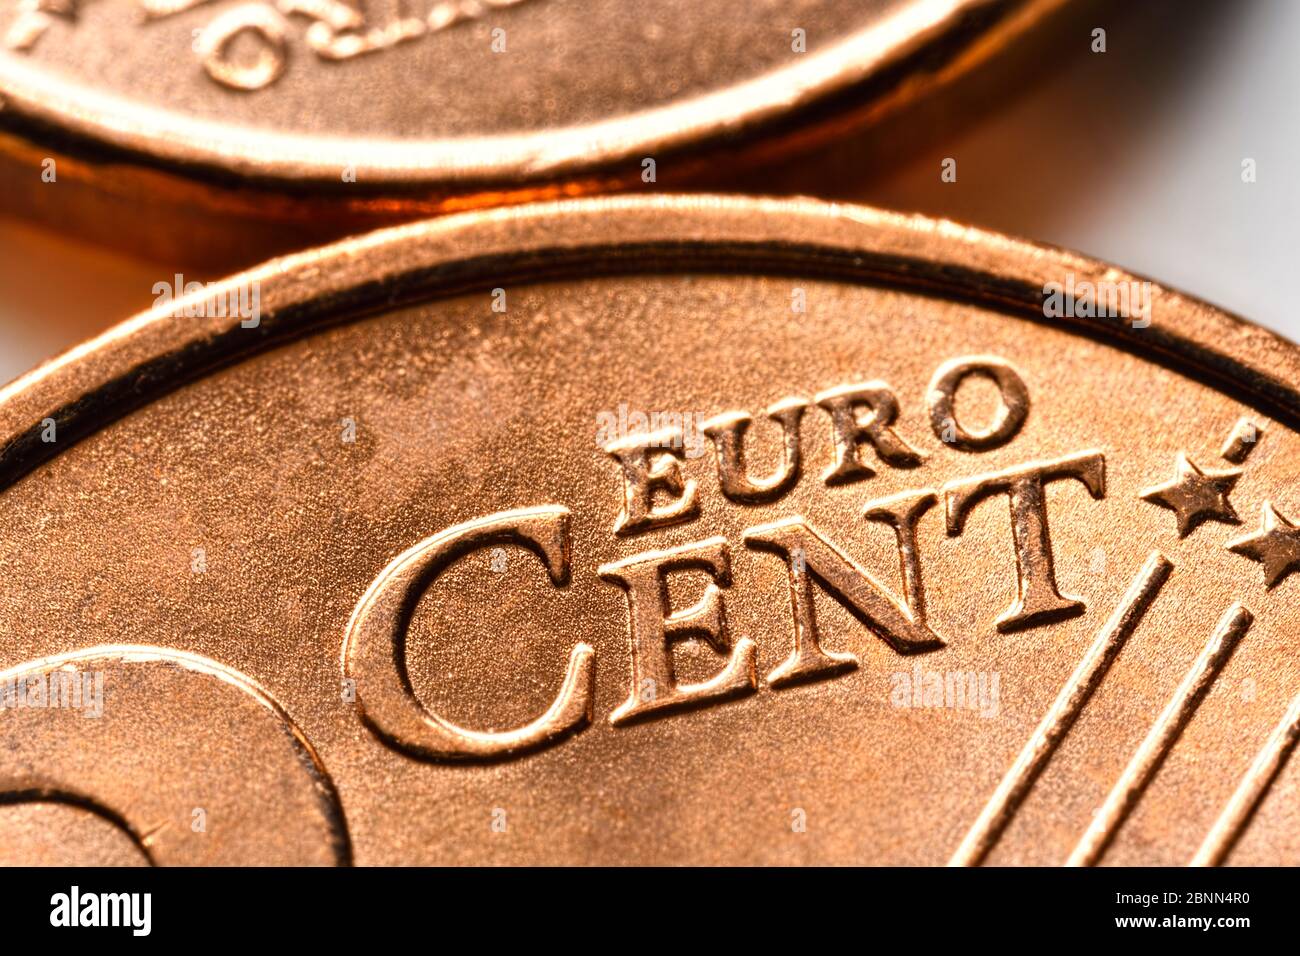 Nahaufnahme der Cent-Münzen, symbolisches Foto für die geplante Abschaffung der 1- und 2-Cent-Münzen Stockfoto